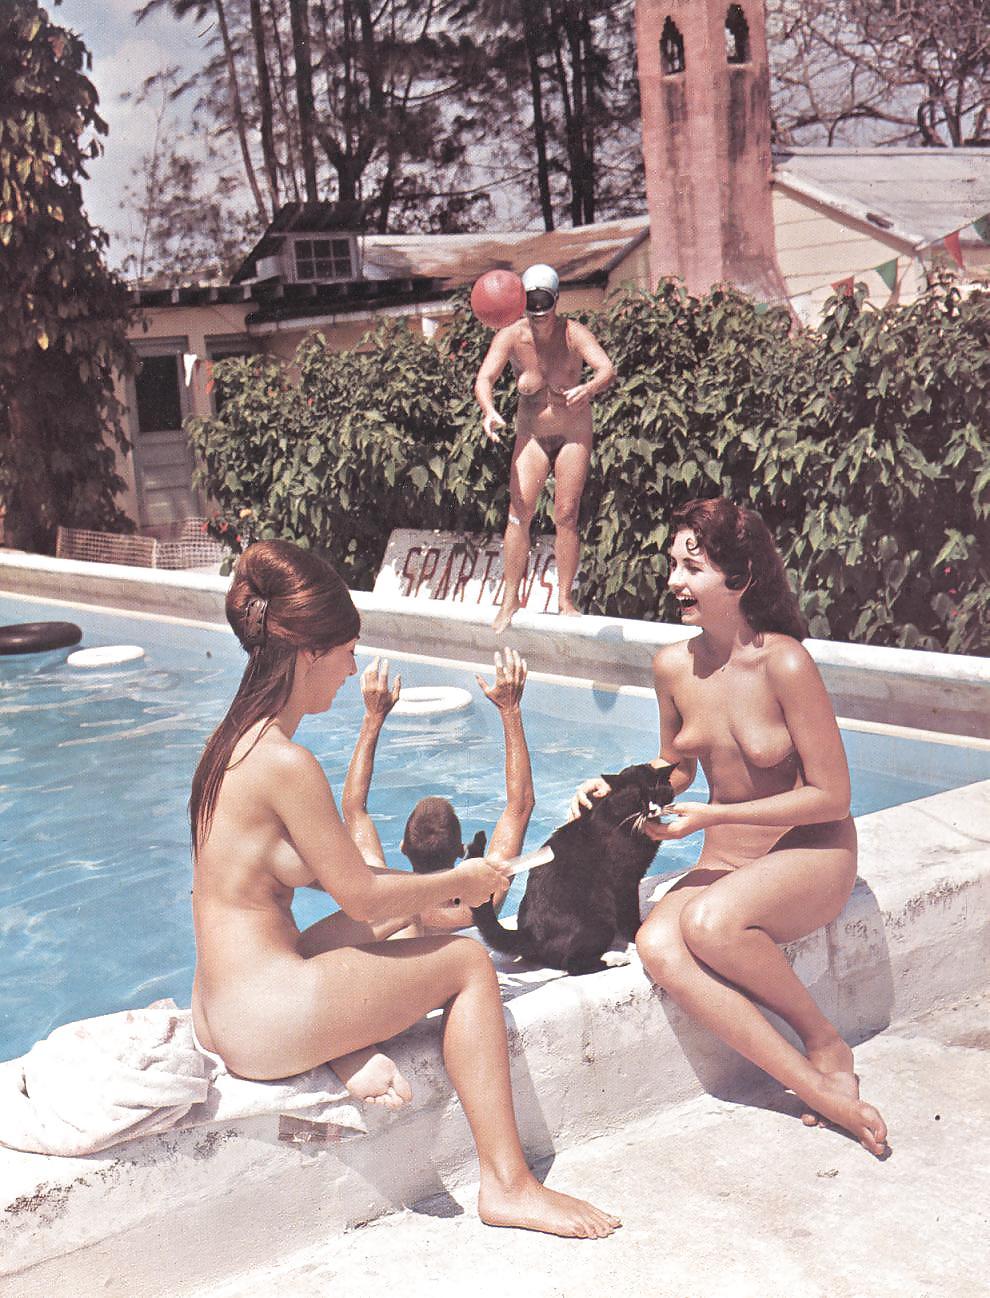 Nudism life galleries nude nudists vintage magazines